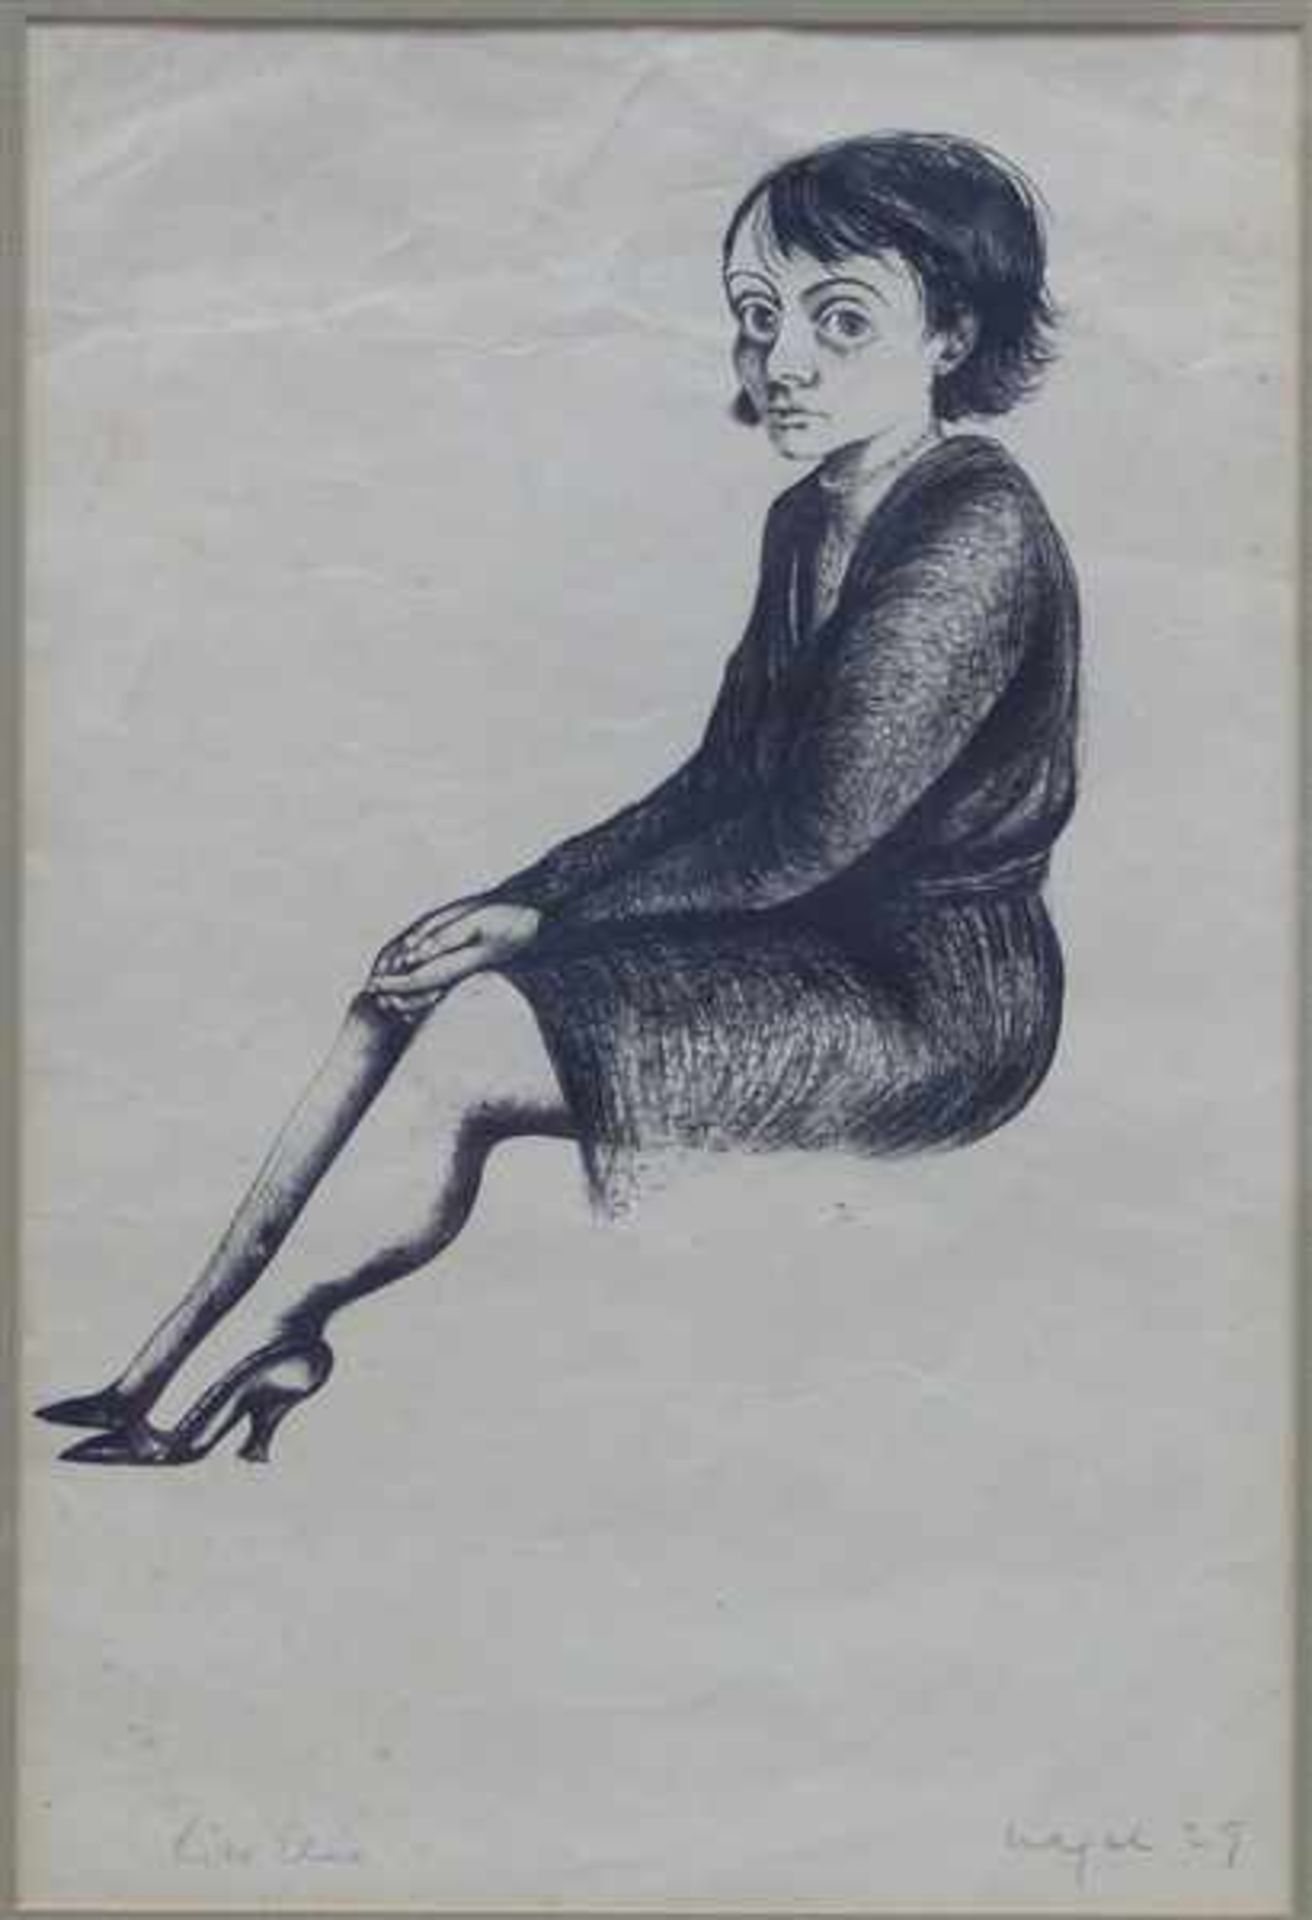 Hanna Nagel 1907 - 1975, Tuschzeichnung, sitzendes Mädchen, rechts unten signiert und datiert (19)